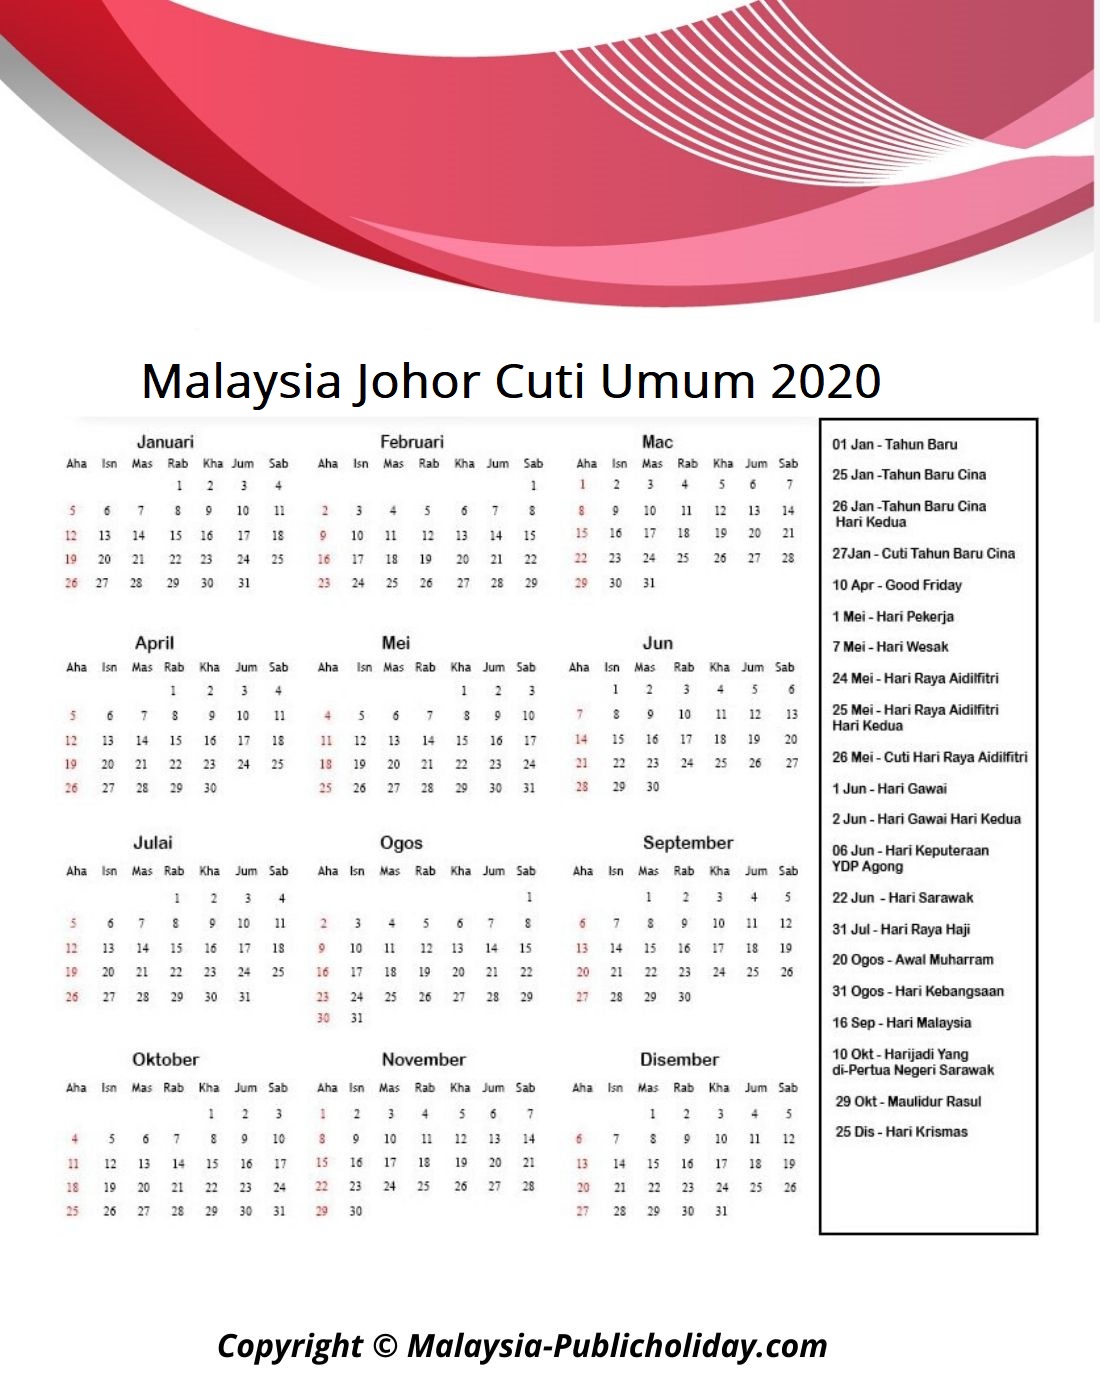 Kalendar Johor 2020 Malaysia